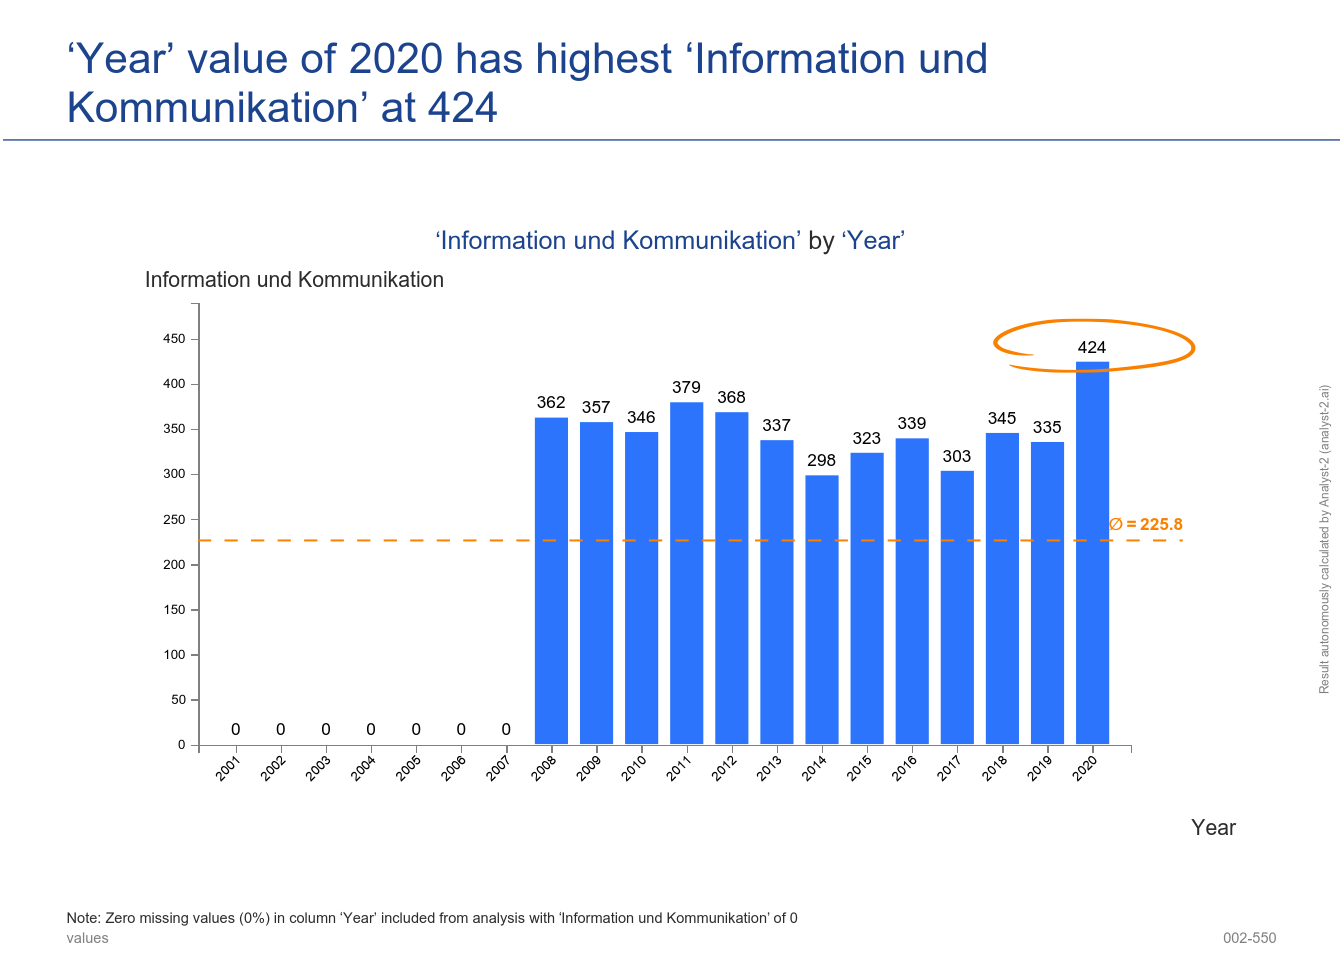 The ‘Year’ value of 2020 has the highest ‘Information und Kommunikation’ at 424. (Gewerbemeldungen (Jahreszahlen) - 002-550)